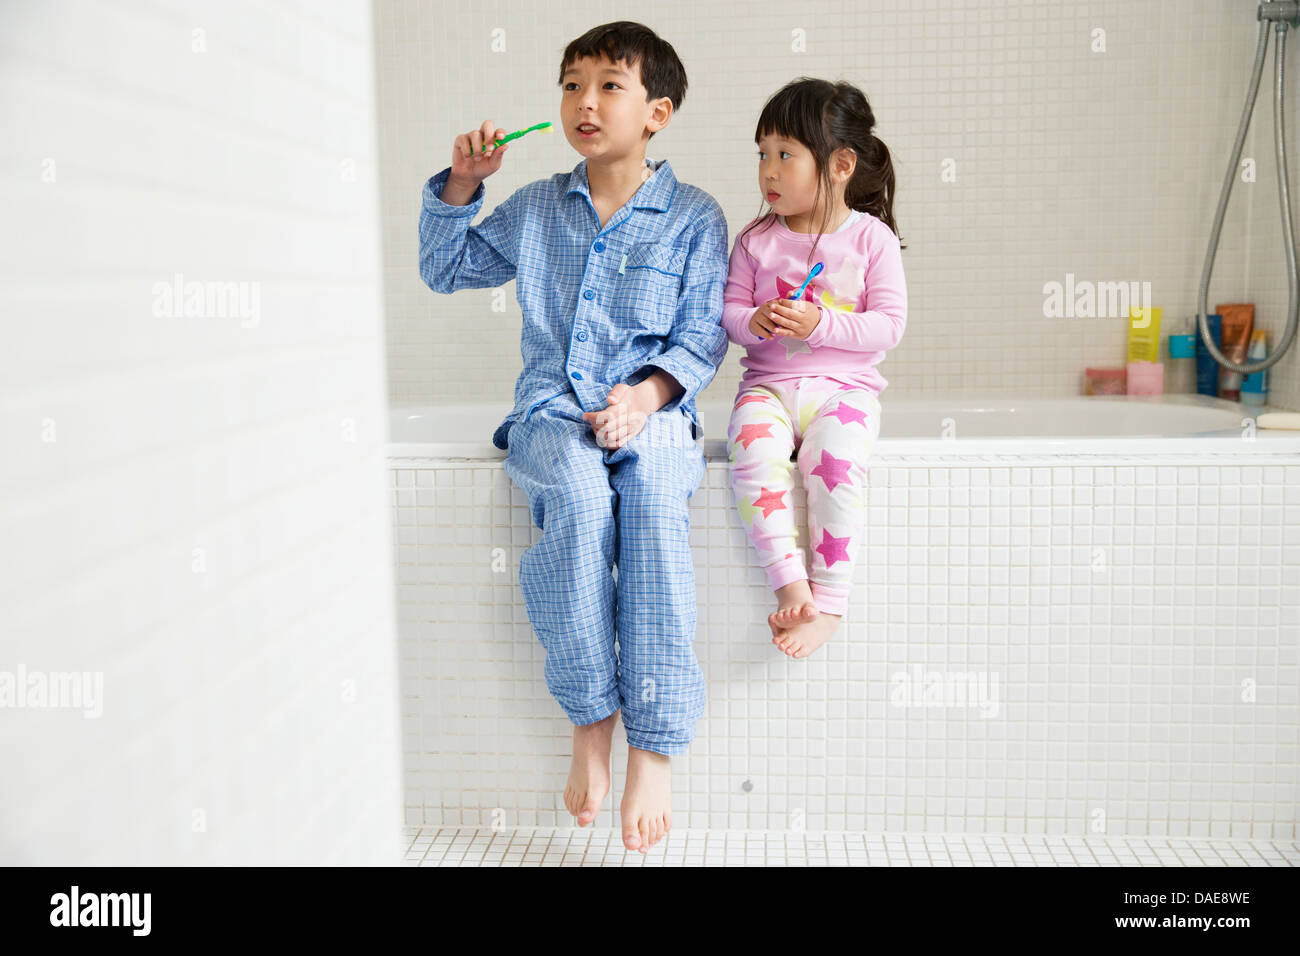 Bruder und Schwester sitzen am Rand der Badewanne mit Zahnbürsten Stockfoto